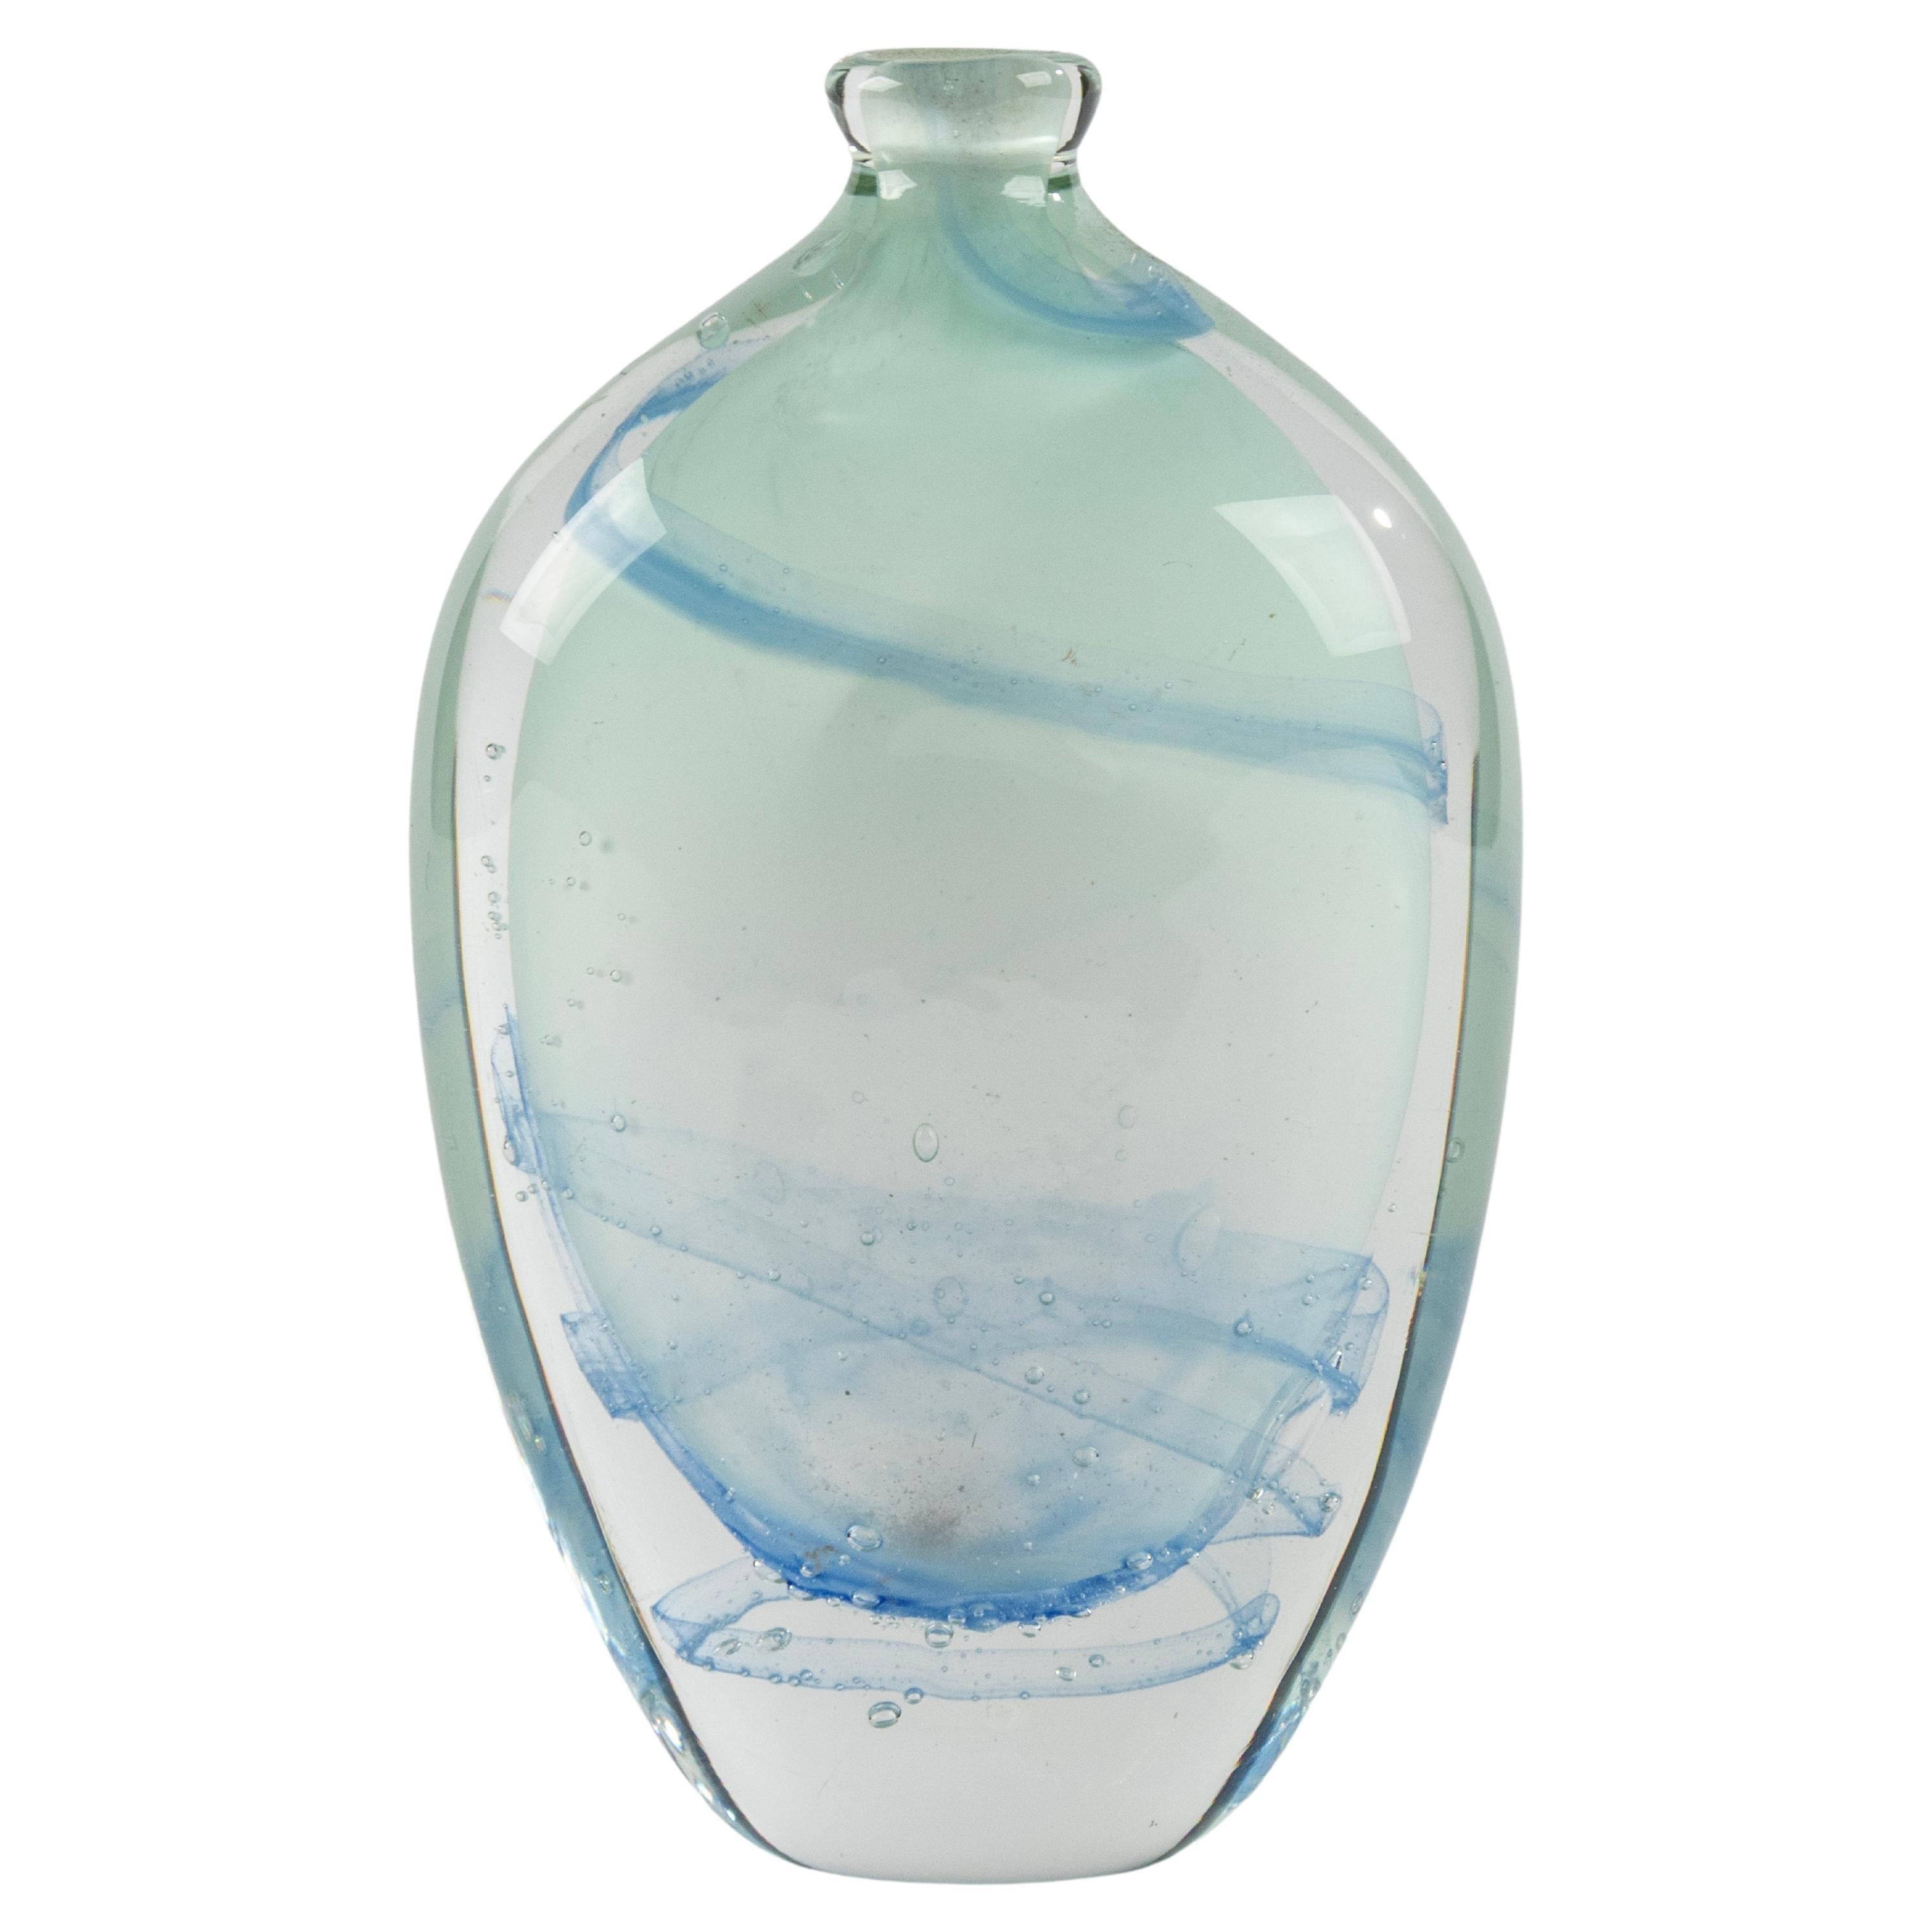 Small Art Glass Vase - Seguso - Soliflore 